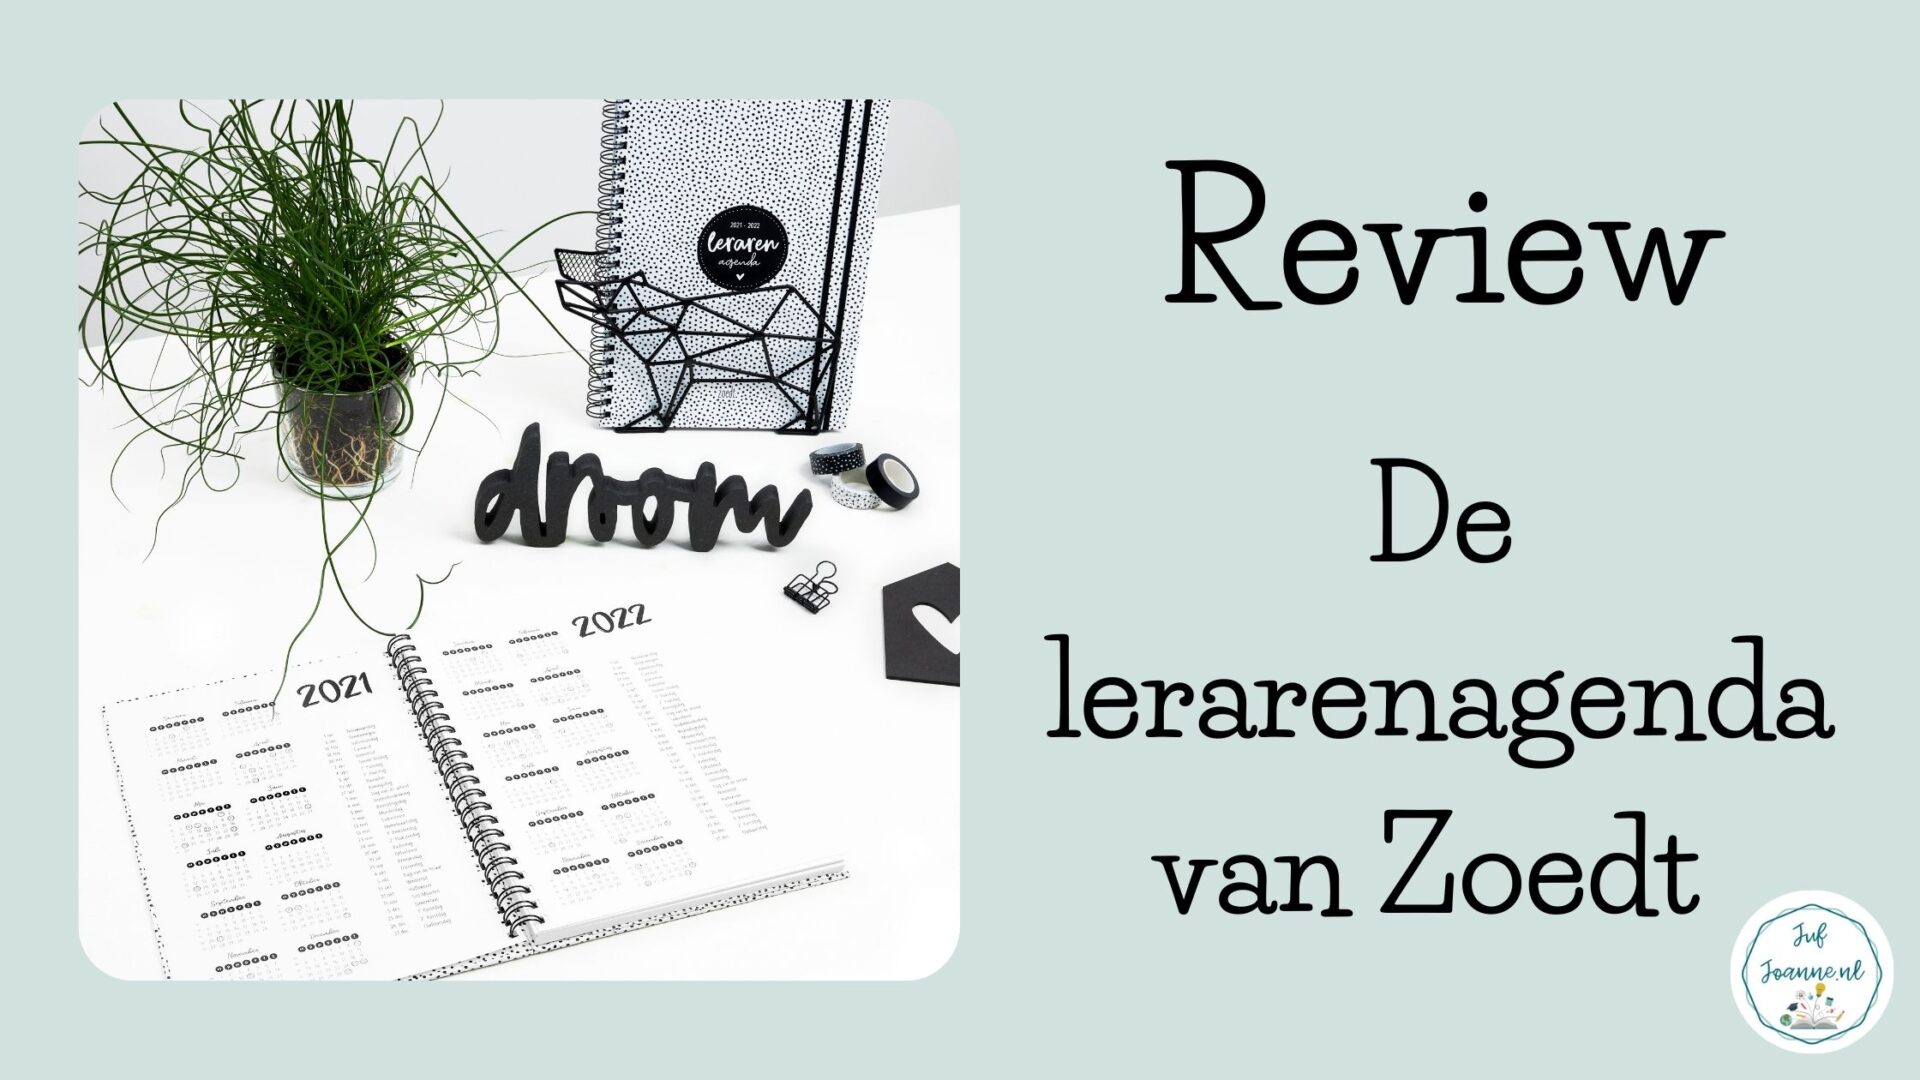 pil Vier Schipbreuk Review: lerarenagenda van Zoedt.nl (win) - Juf Joanne